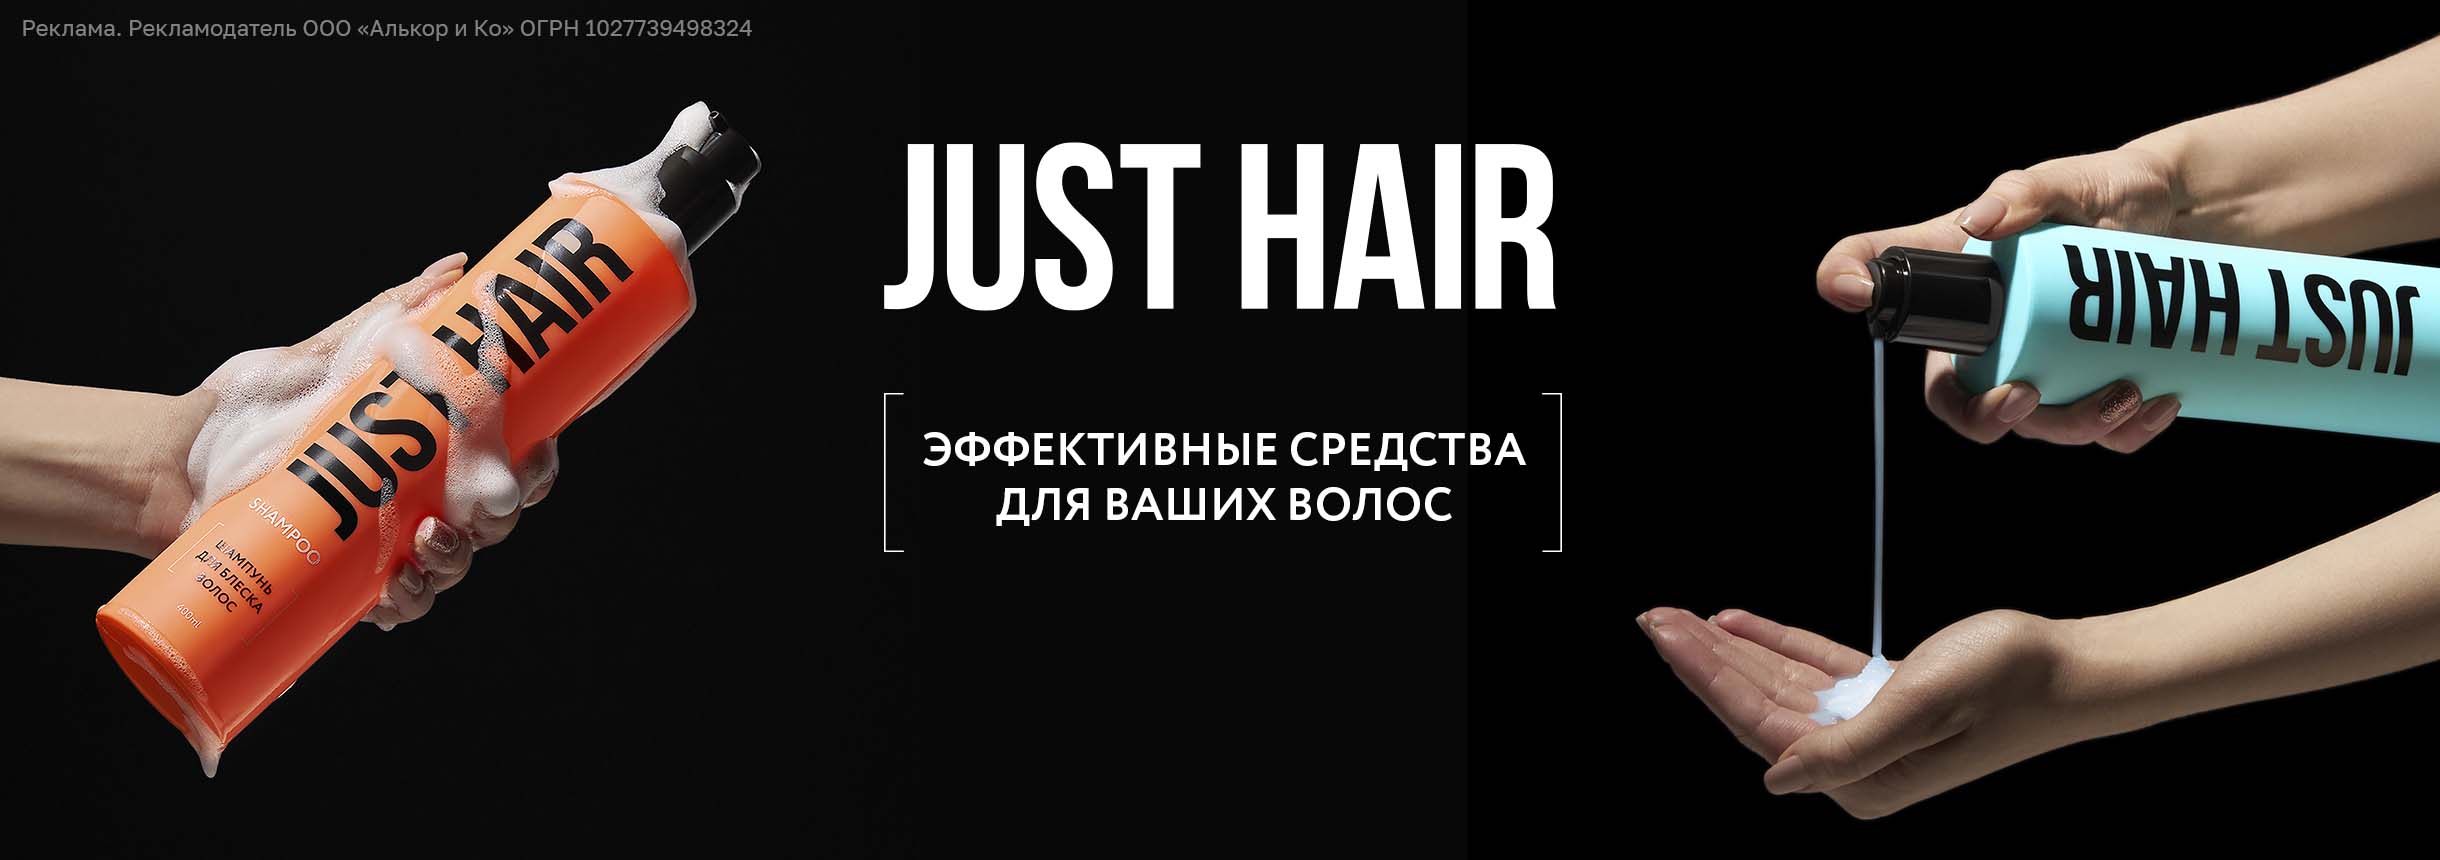 JUST HAIR купить в интернет-магазине ЛЭтуаль, цены, отзывы, фото, доставка, большой каталог.